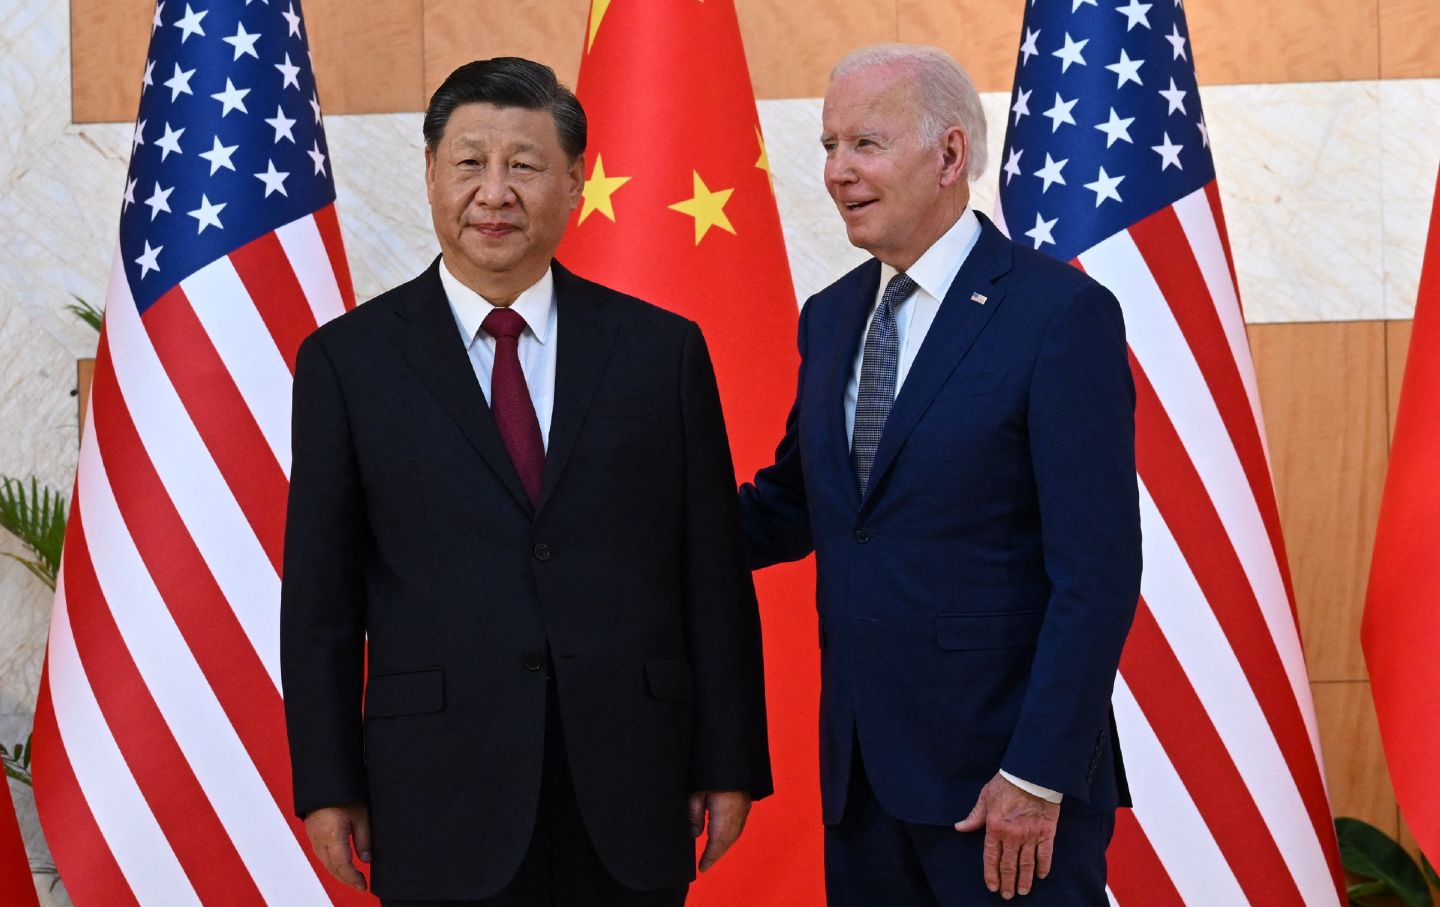 “Xi Jinping është një diktator”, Pekini zyrtar reagon pas deklaratës së Biden